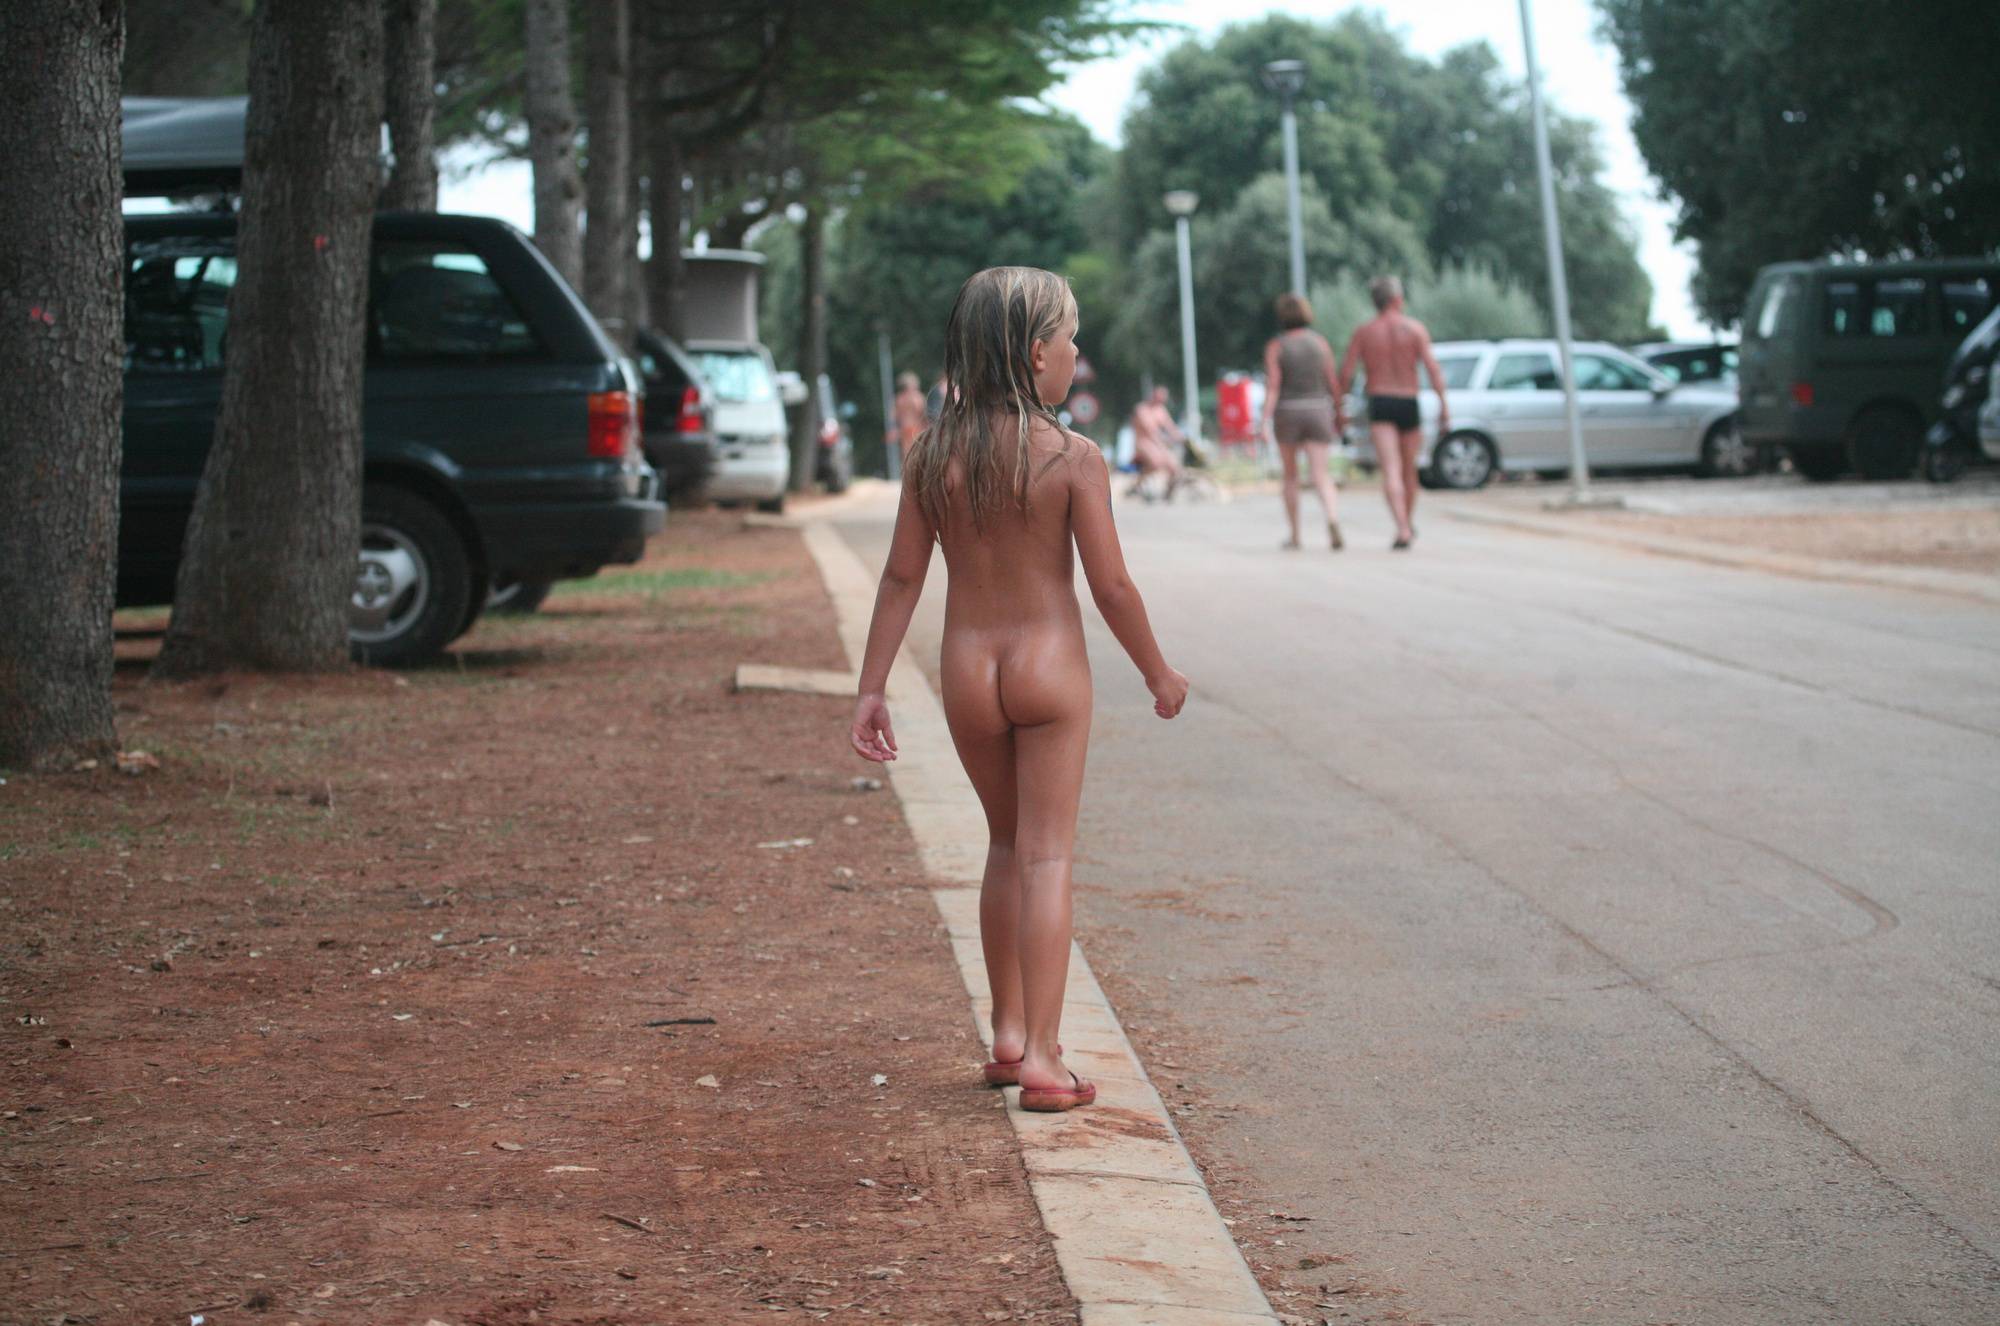 Nudist Pics Naturist Child on Sidewalk - 1